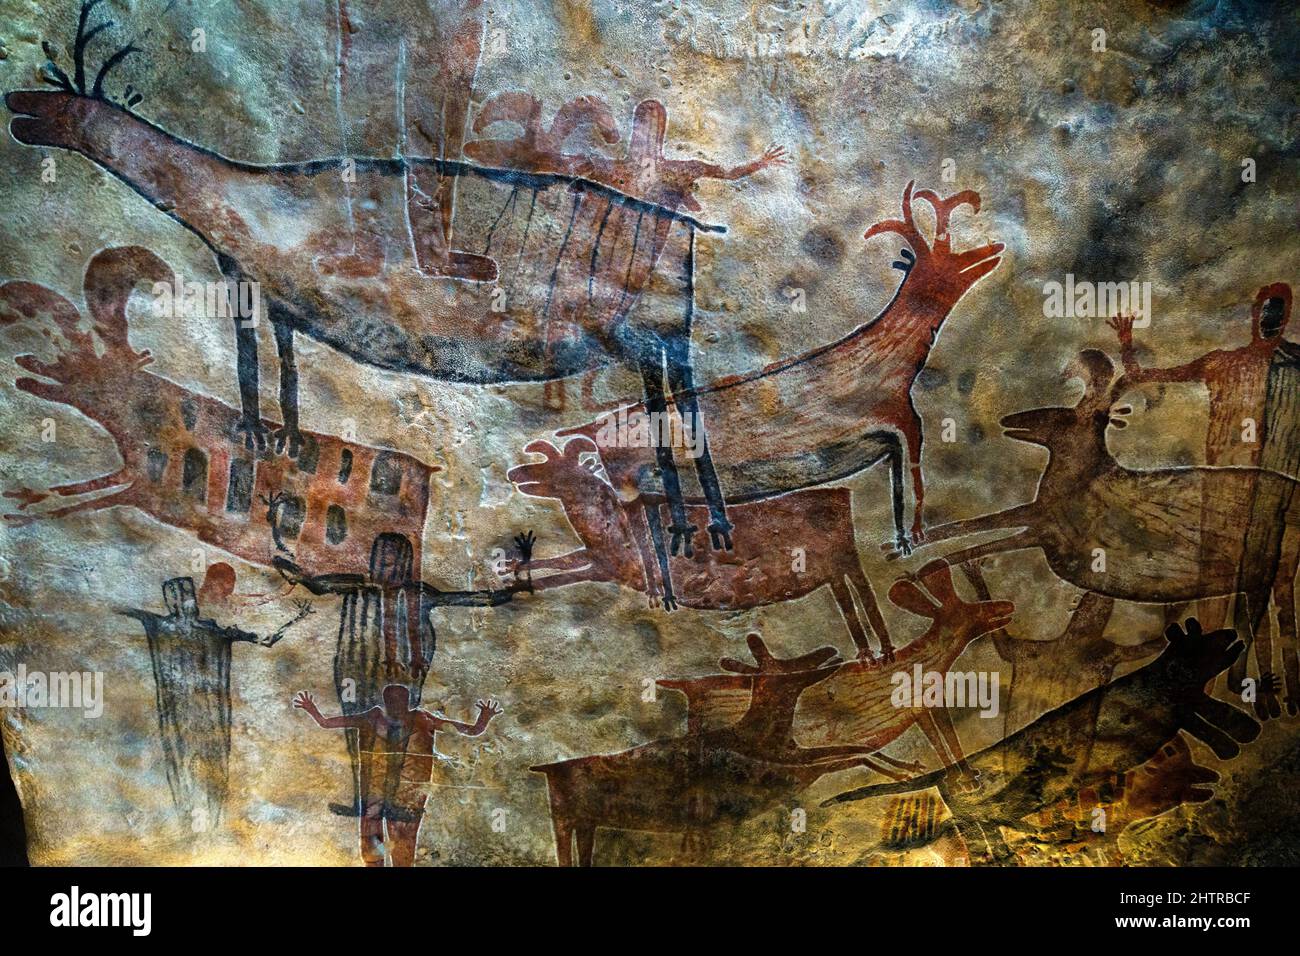 Arte rupestre, Museo Nacional de Antropología, Ciudad de México. Foto de stock